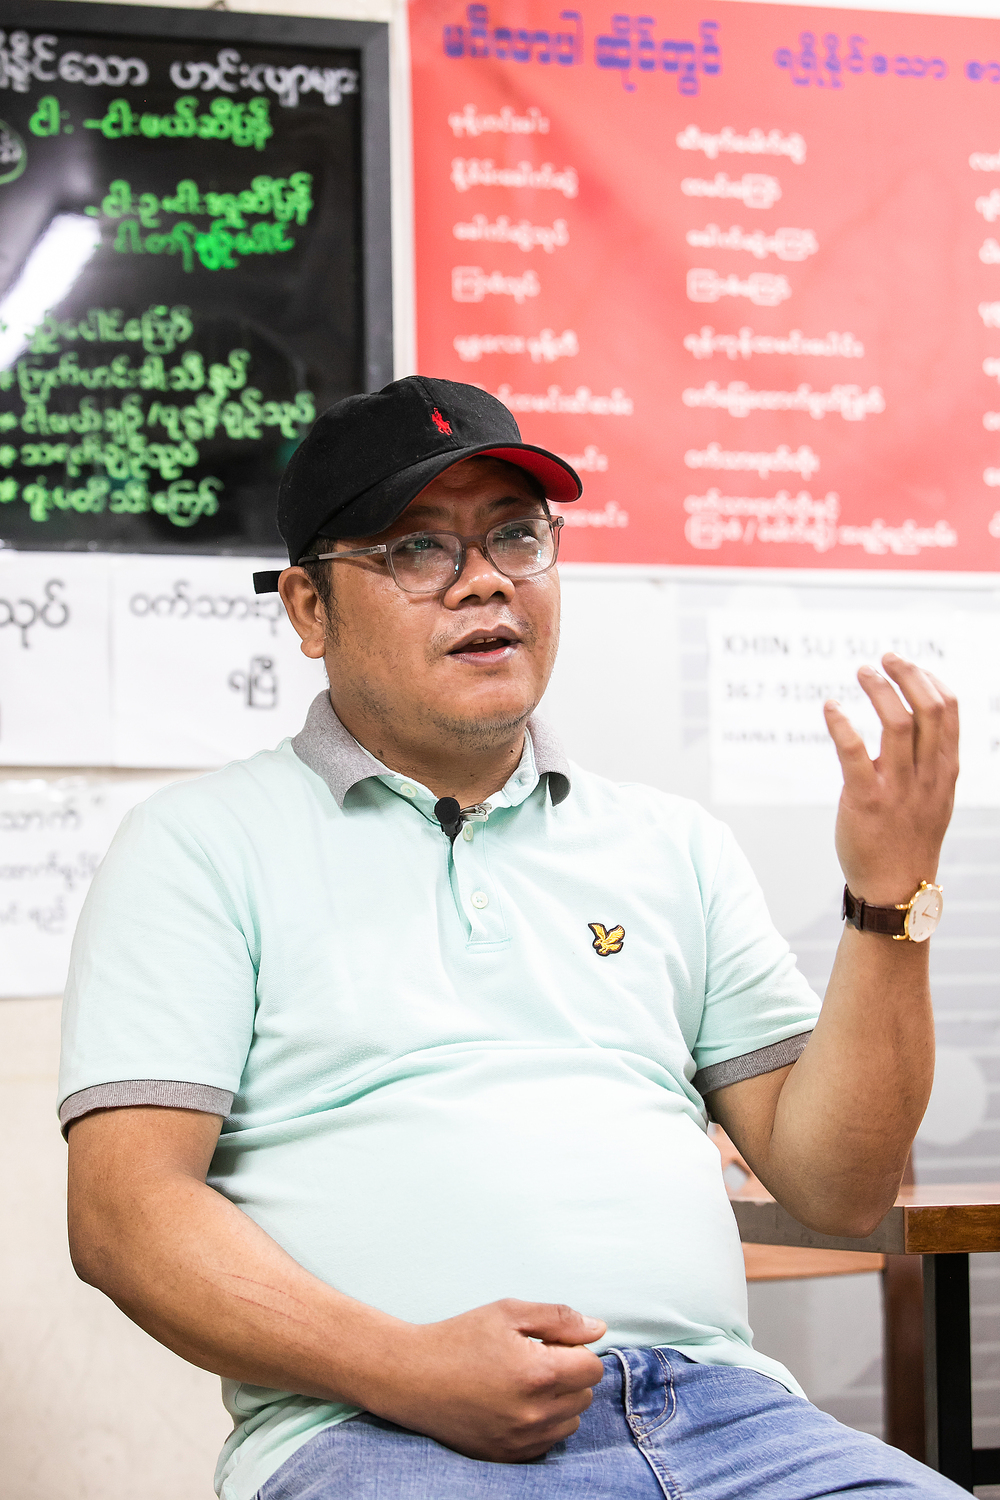 ▲ 윈라이 미얀마 전문 음식점 밍그라바 대표